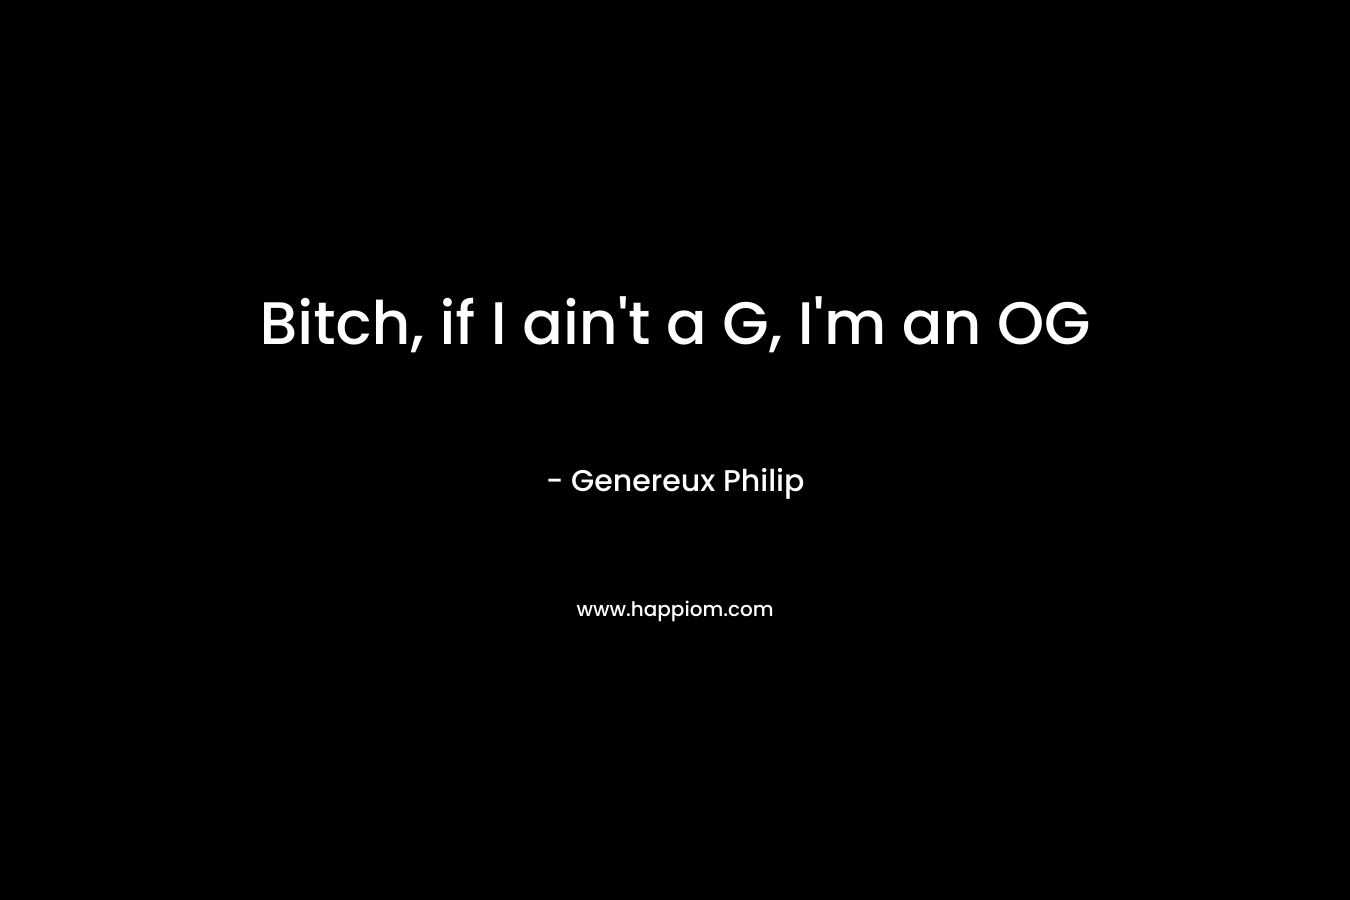 Bitch, if I ain't a G, I'm an OG